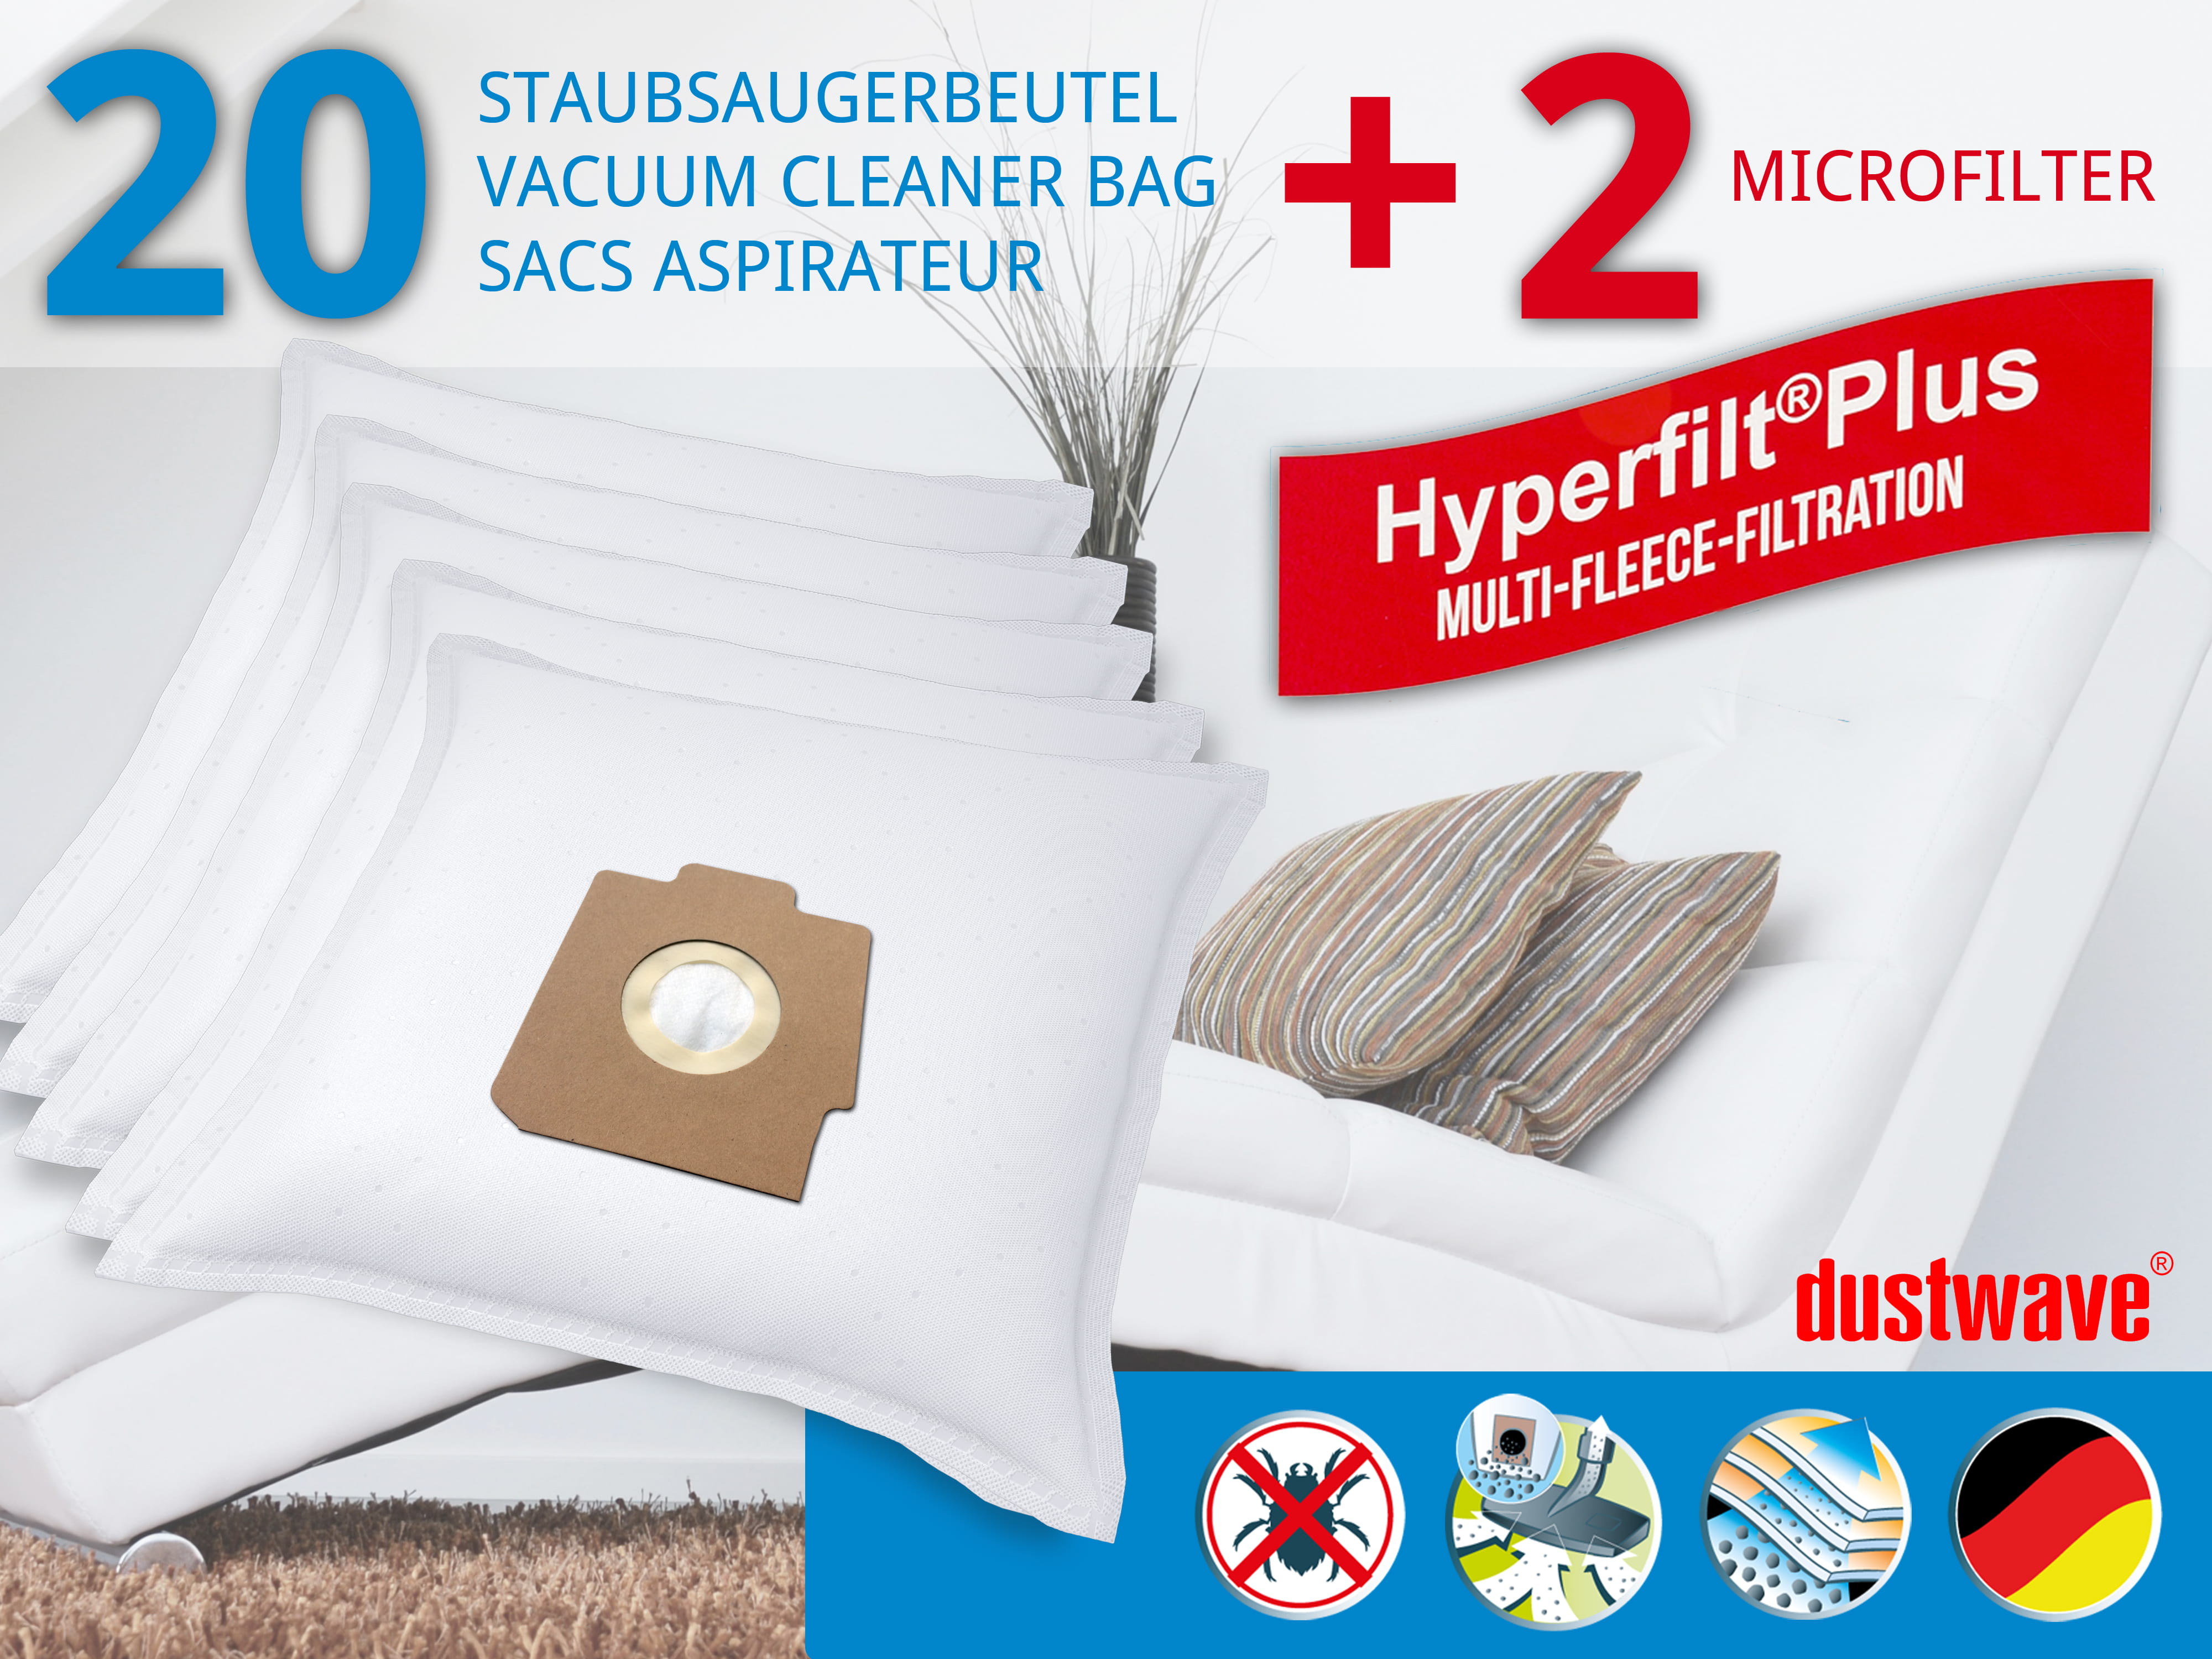 Dustwave® 20 Staubsaugerbeutel für Hoover SC211... / TRSC211 - hocheffizient, mehrlagiges Mikrovlies mit Hygieneverschluss - Made in Germany